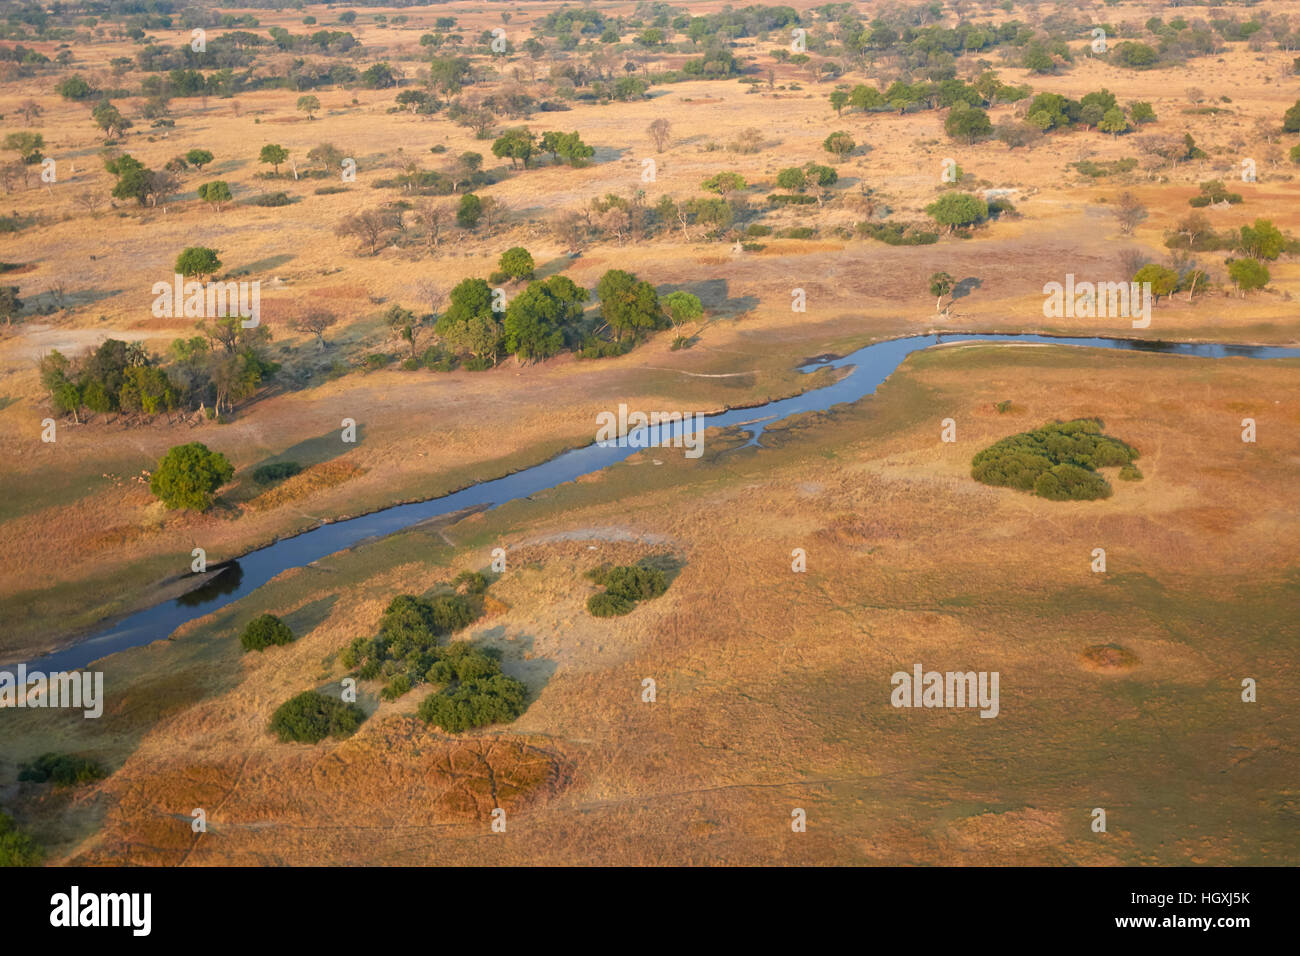 Delta de l'Okavango au Botswana, la saison sèche Banque D'Images